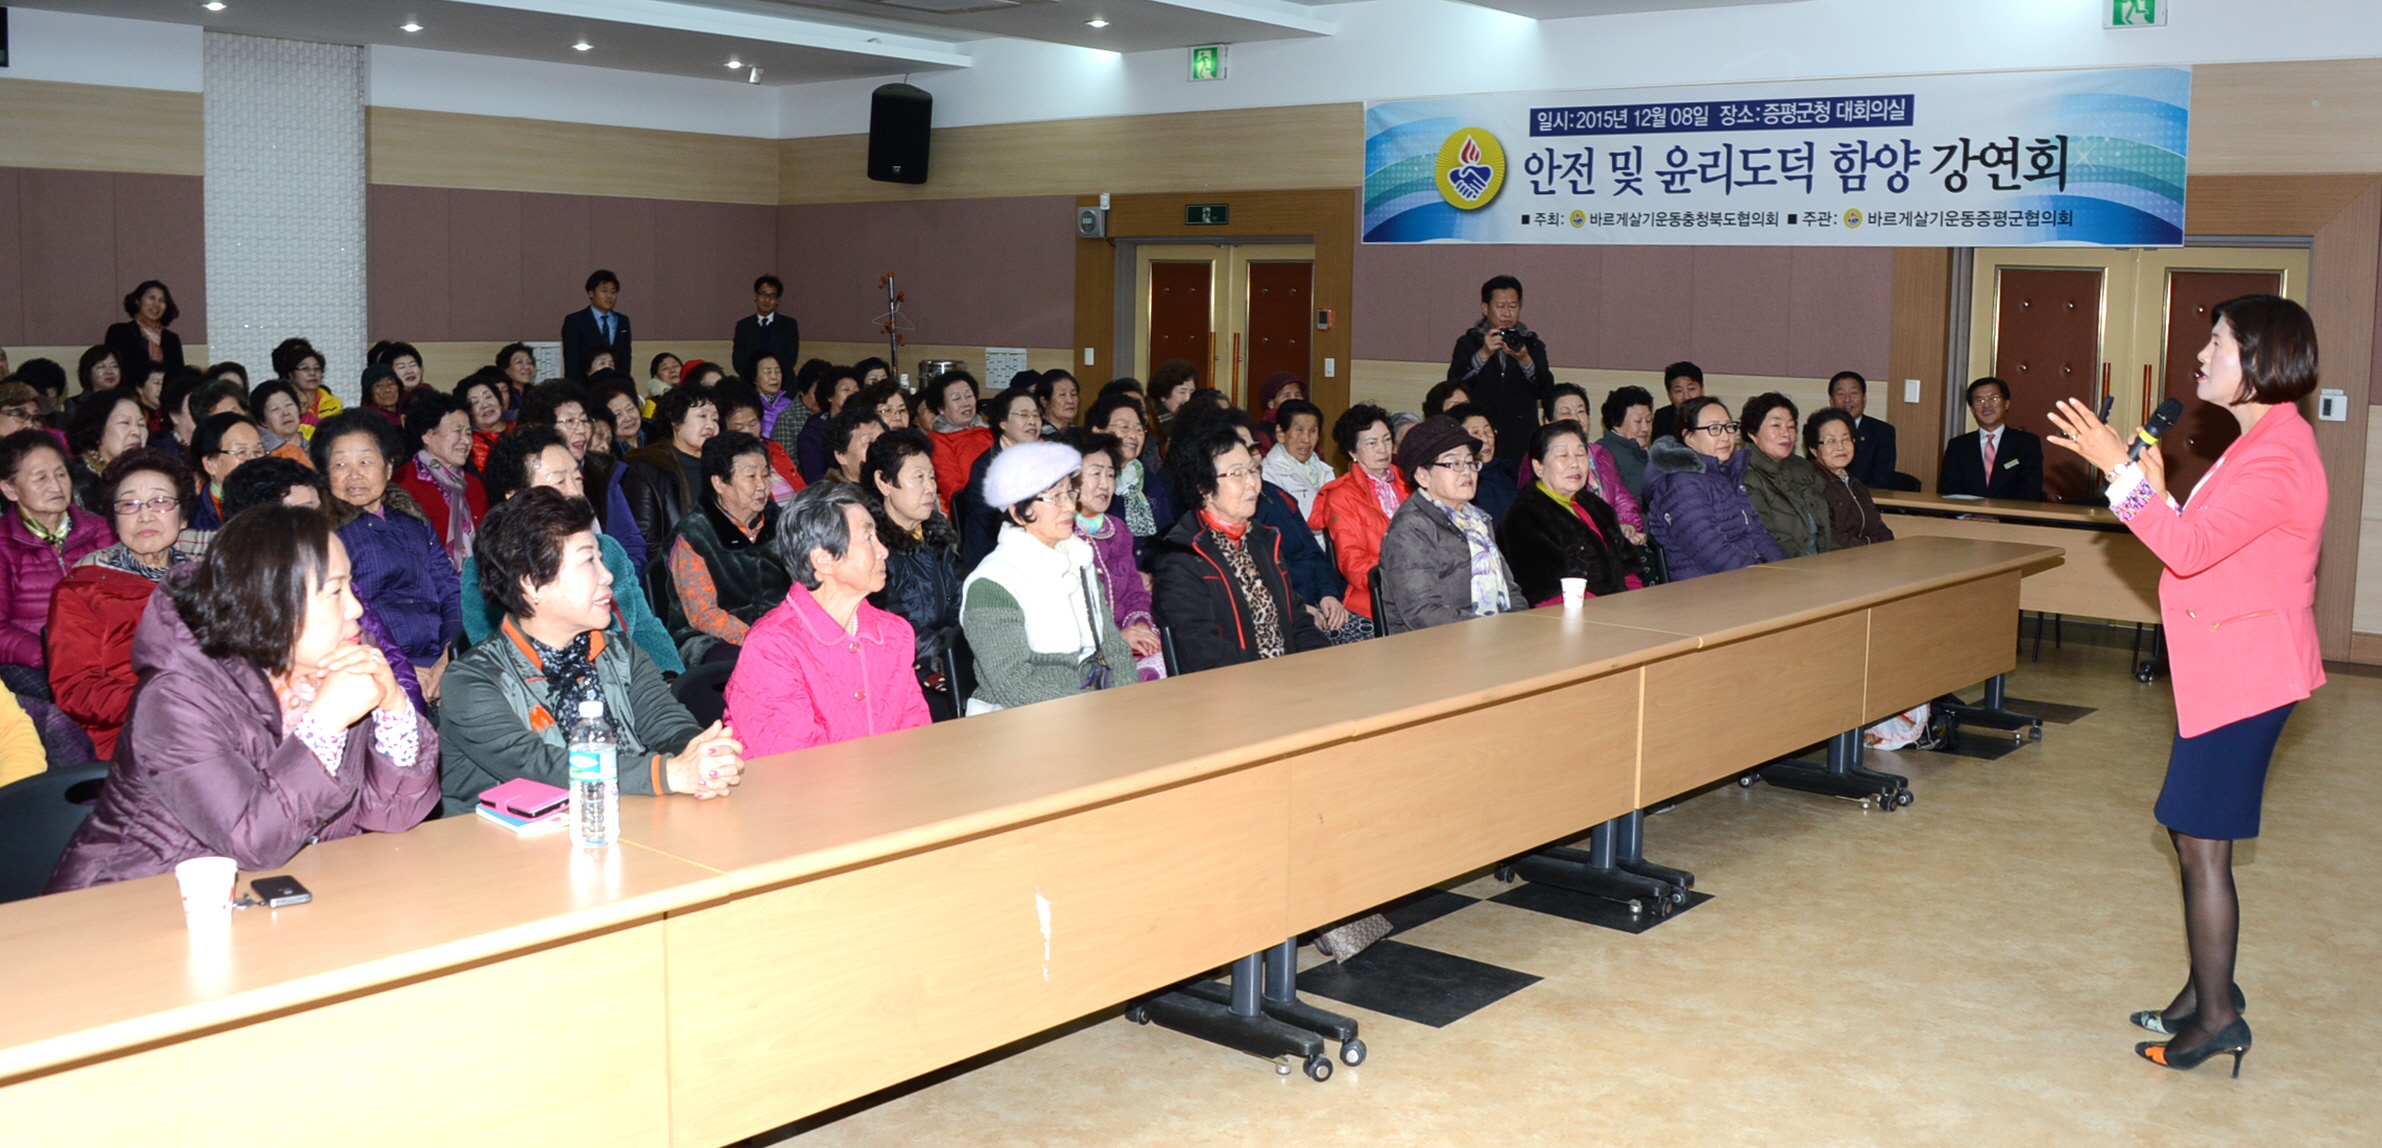 바살 증평군협의회 법질서 행복한세상 강연회 개최